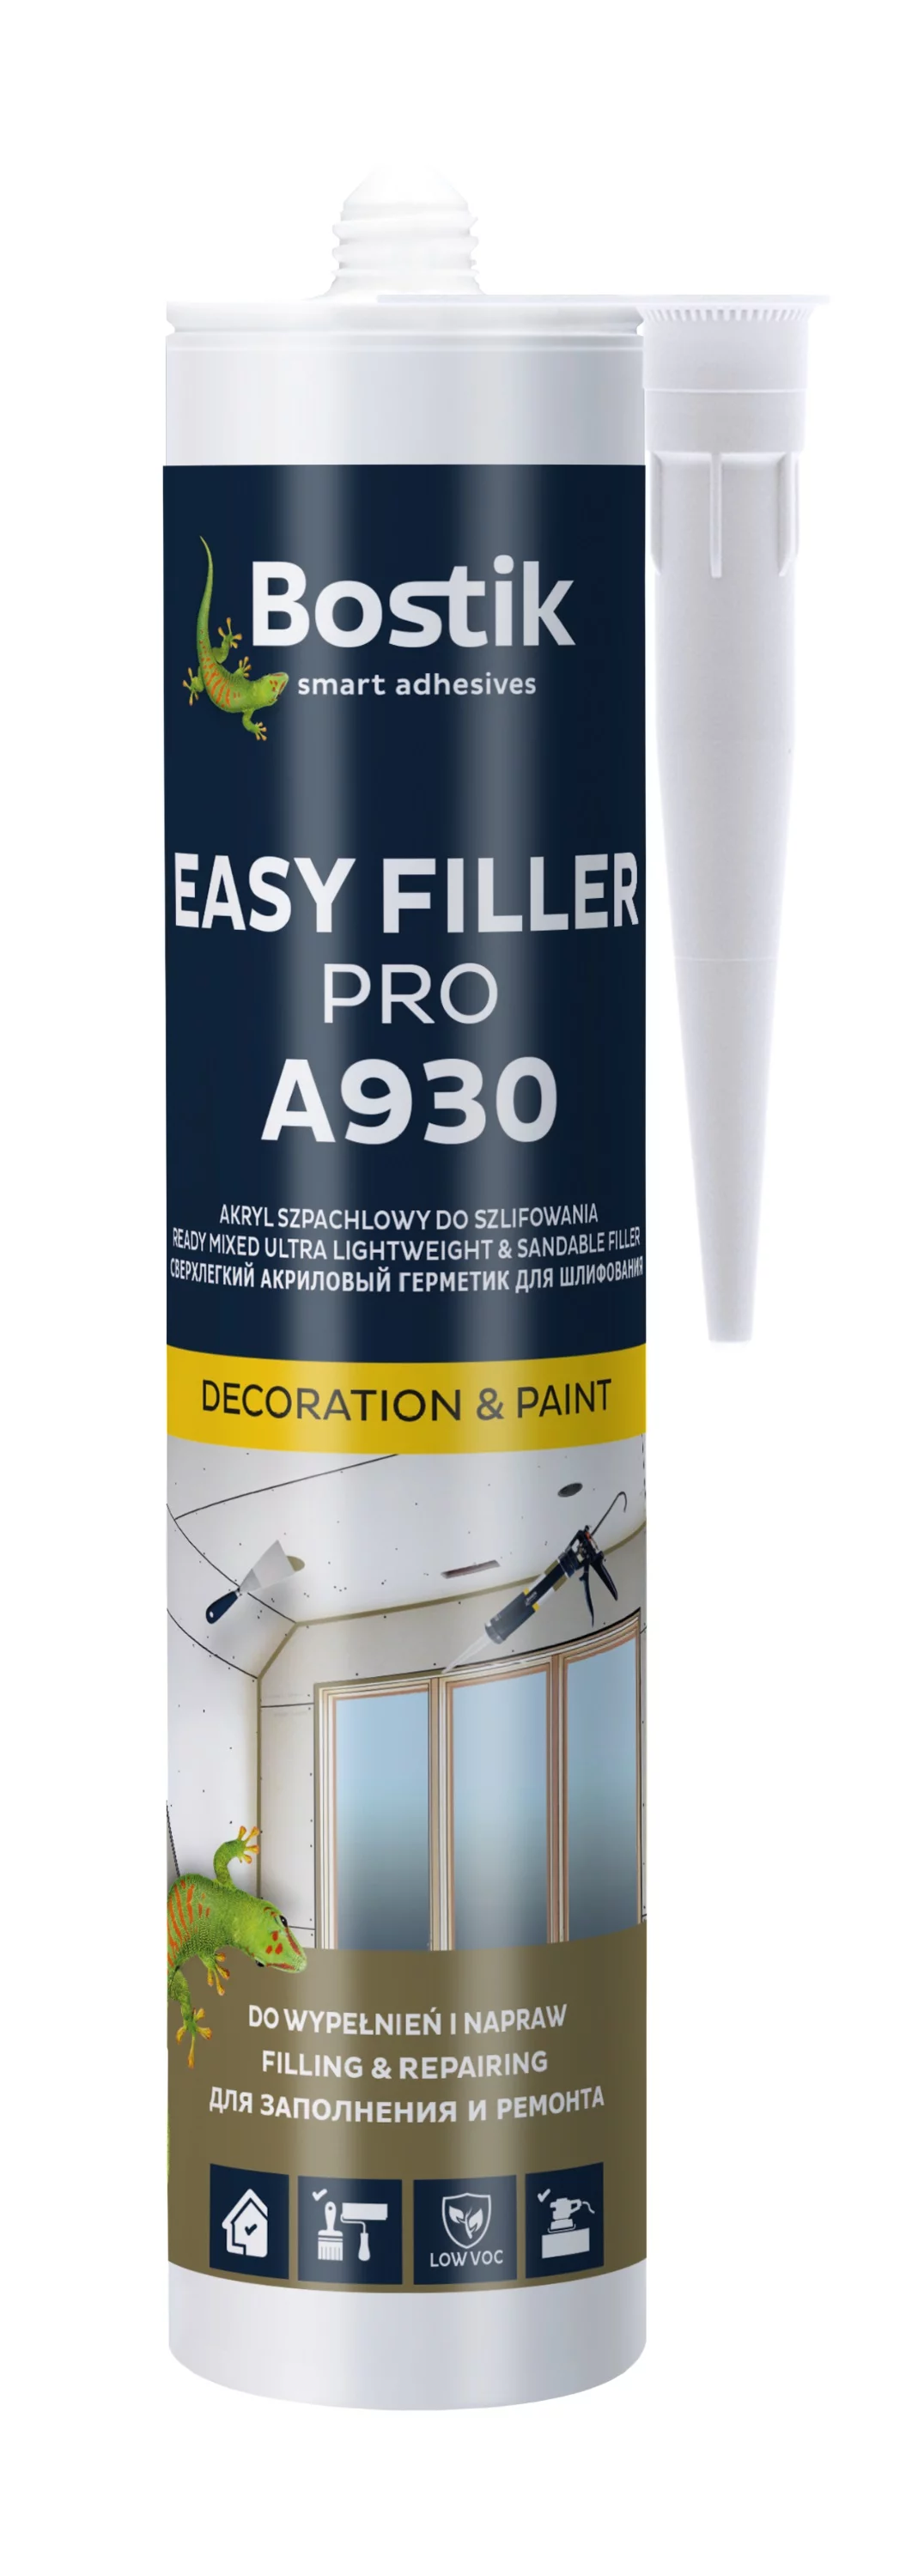 EASY FILLER PRO A930 od Bostik - idealne połączenie uszczelniacza akrylowego z masą szpachlową